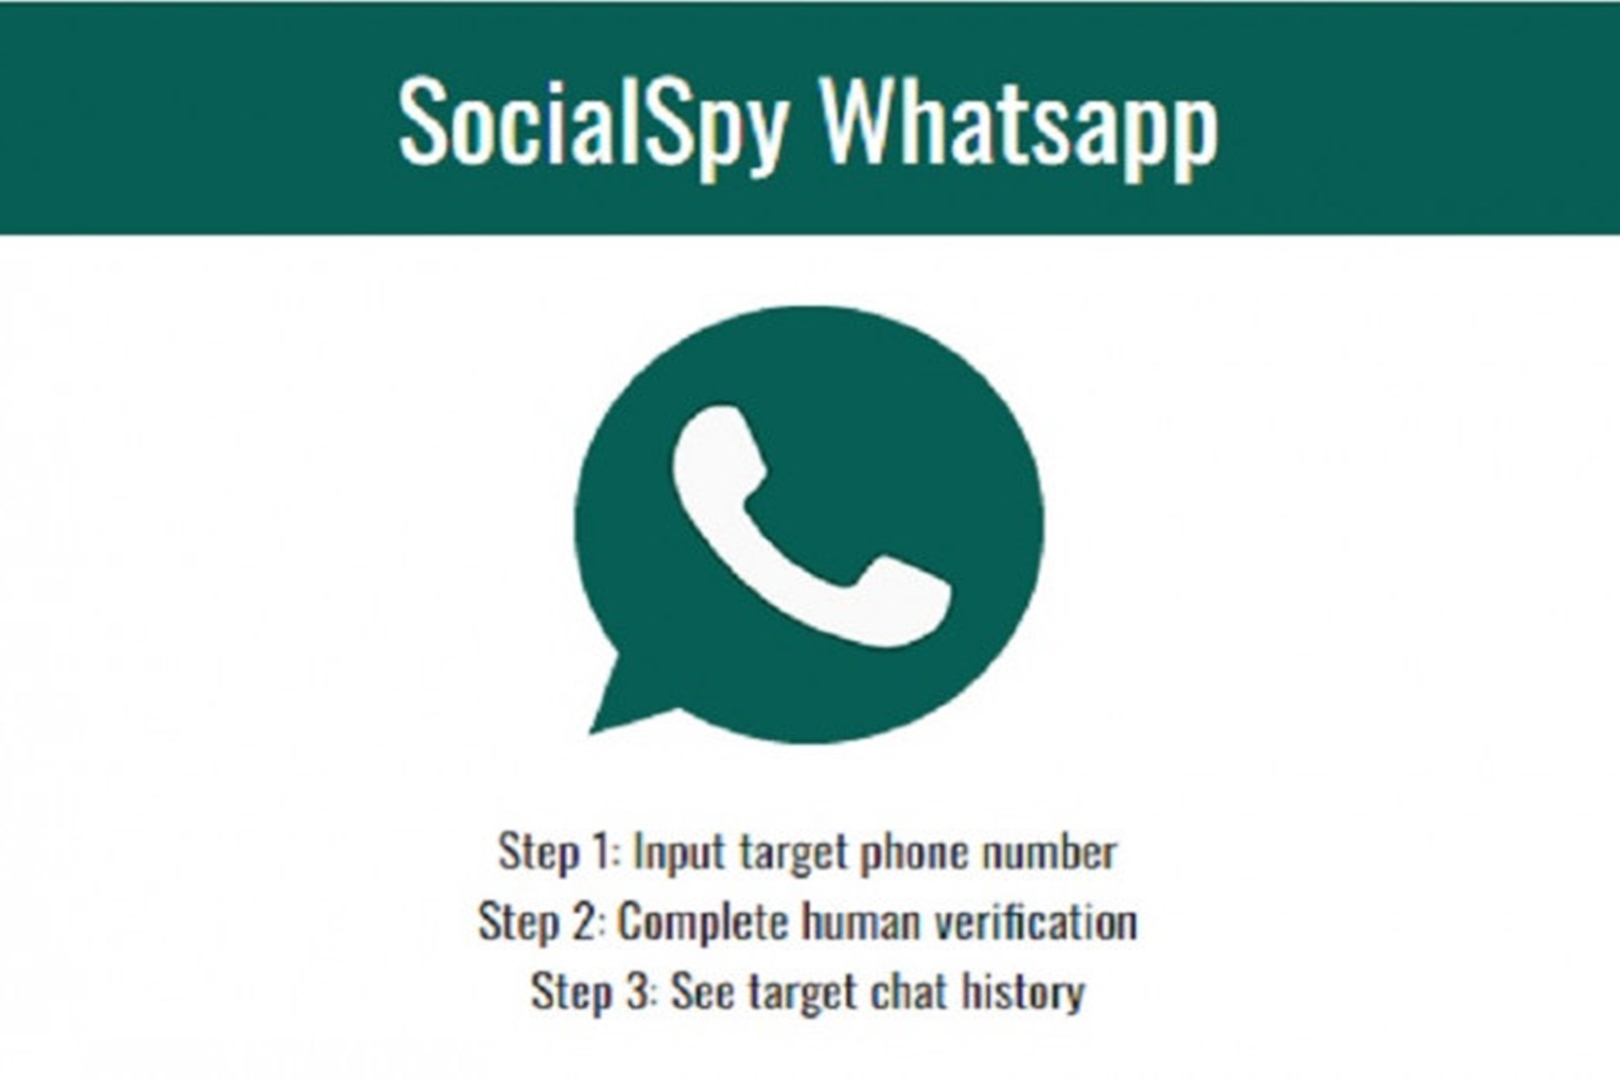 Cara Log In Social Spy Whatsapp, Intip Chat Pasangan Tanpa Ketauan!